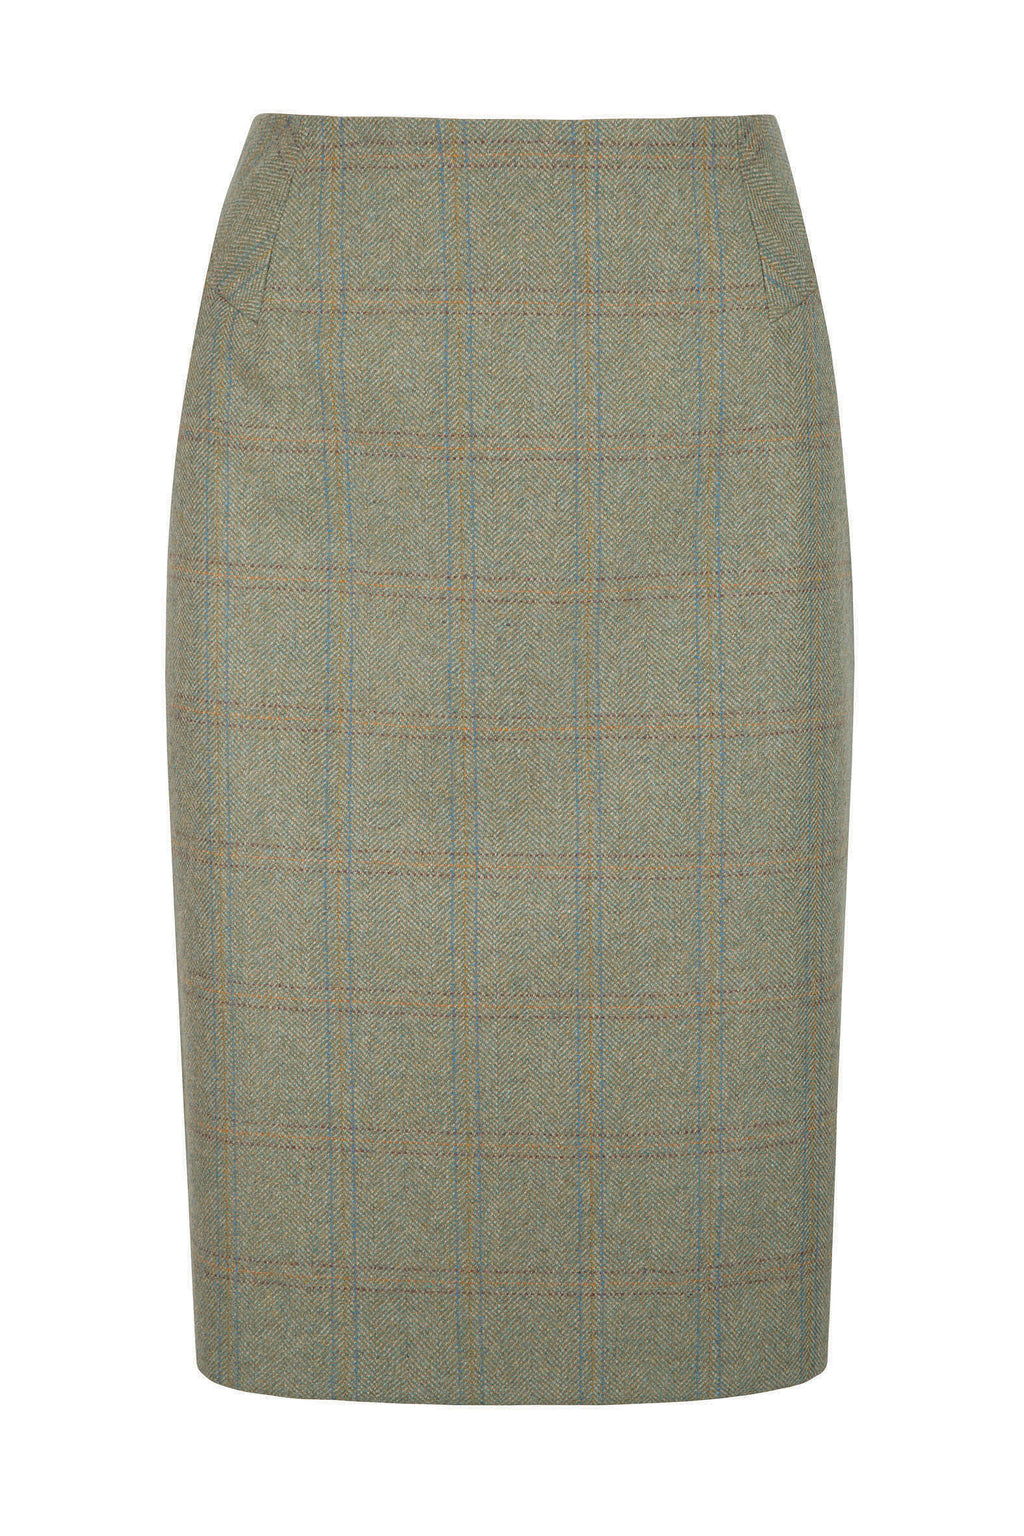 Dubarry Fern Skirt